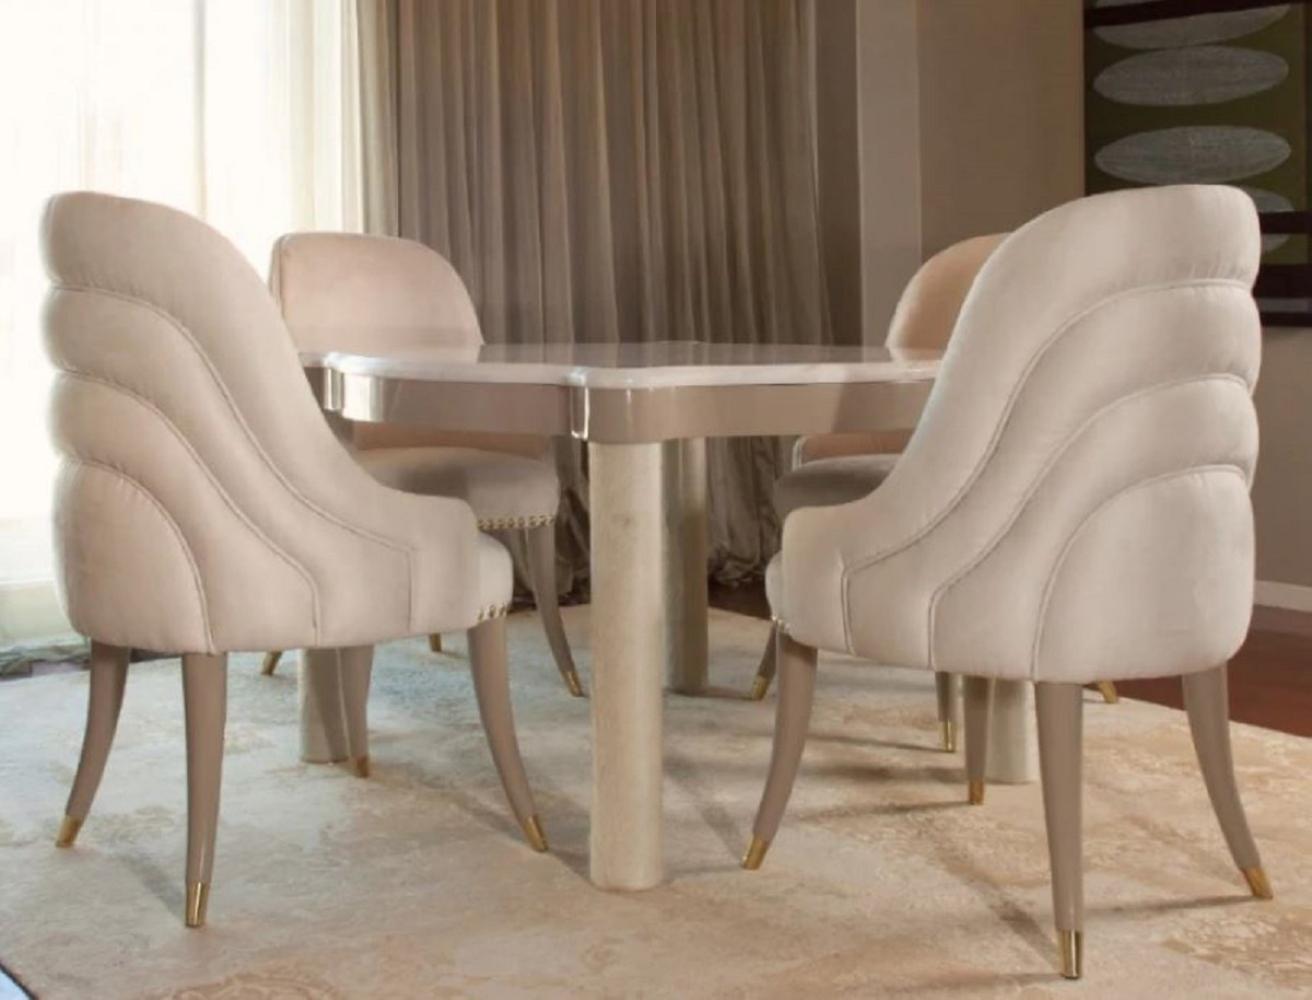 Casa Padrino Luxus Esszimmer Set Cremefarben / Taupe / Grau / Gold - 1 Marmor Esstisch & 4 Esszimmerstühle mit edlem Samtstoff - Luxus Esszimmer Möbel - Luxus Qualität - Made in Italy Bild 1